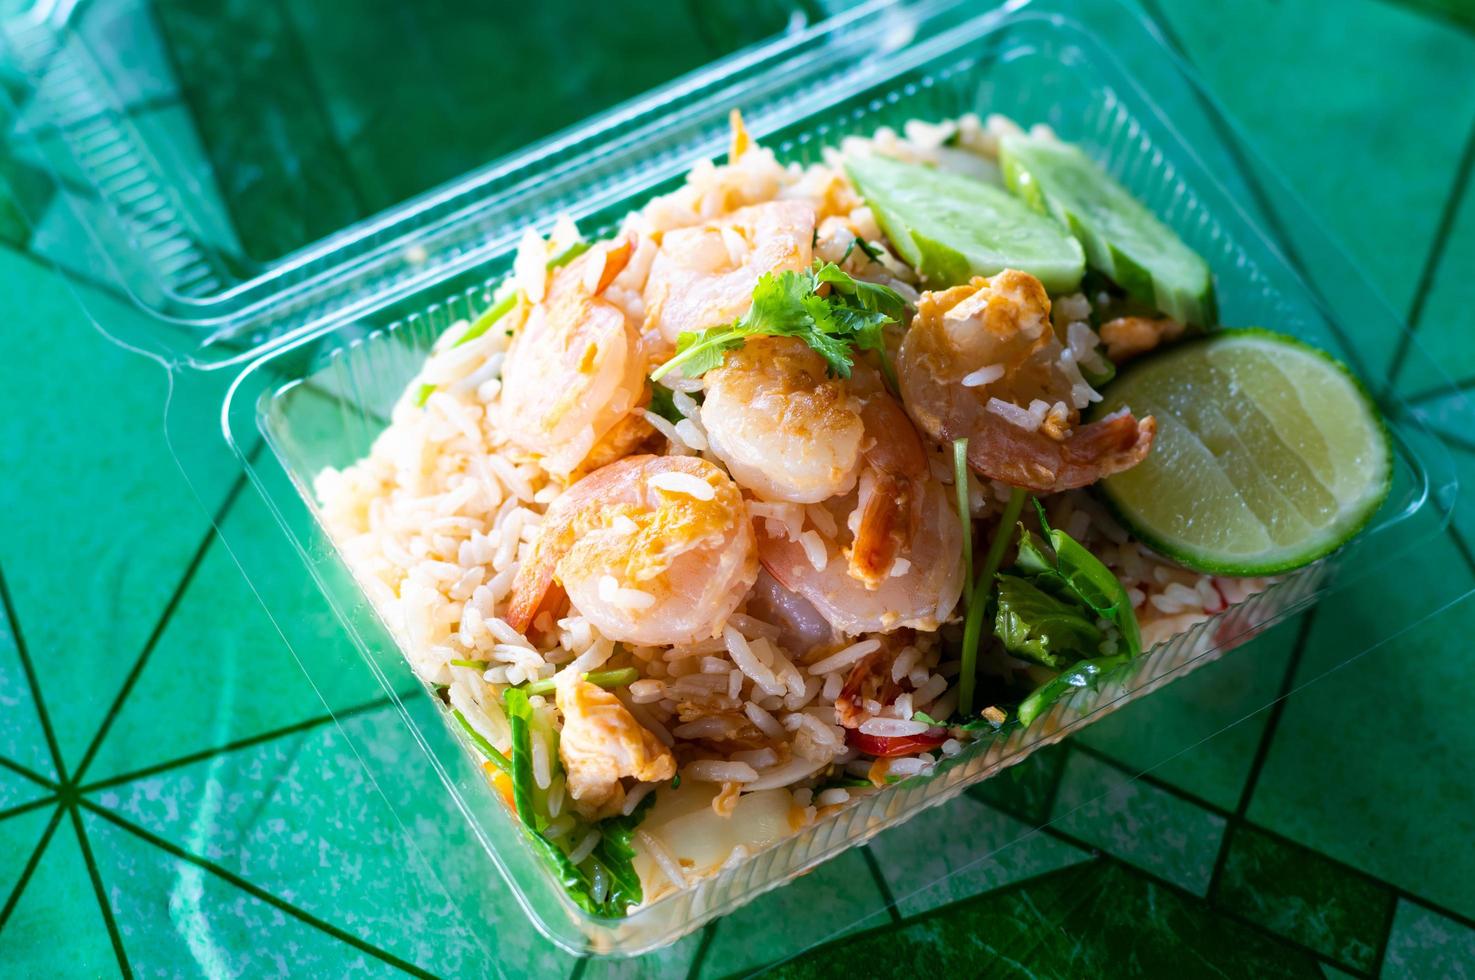 arroz frito cubierto con camarones en una caja de plástico. foto